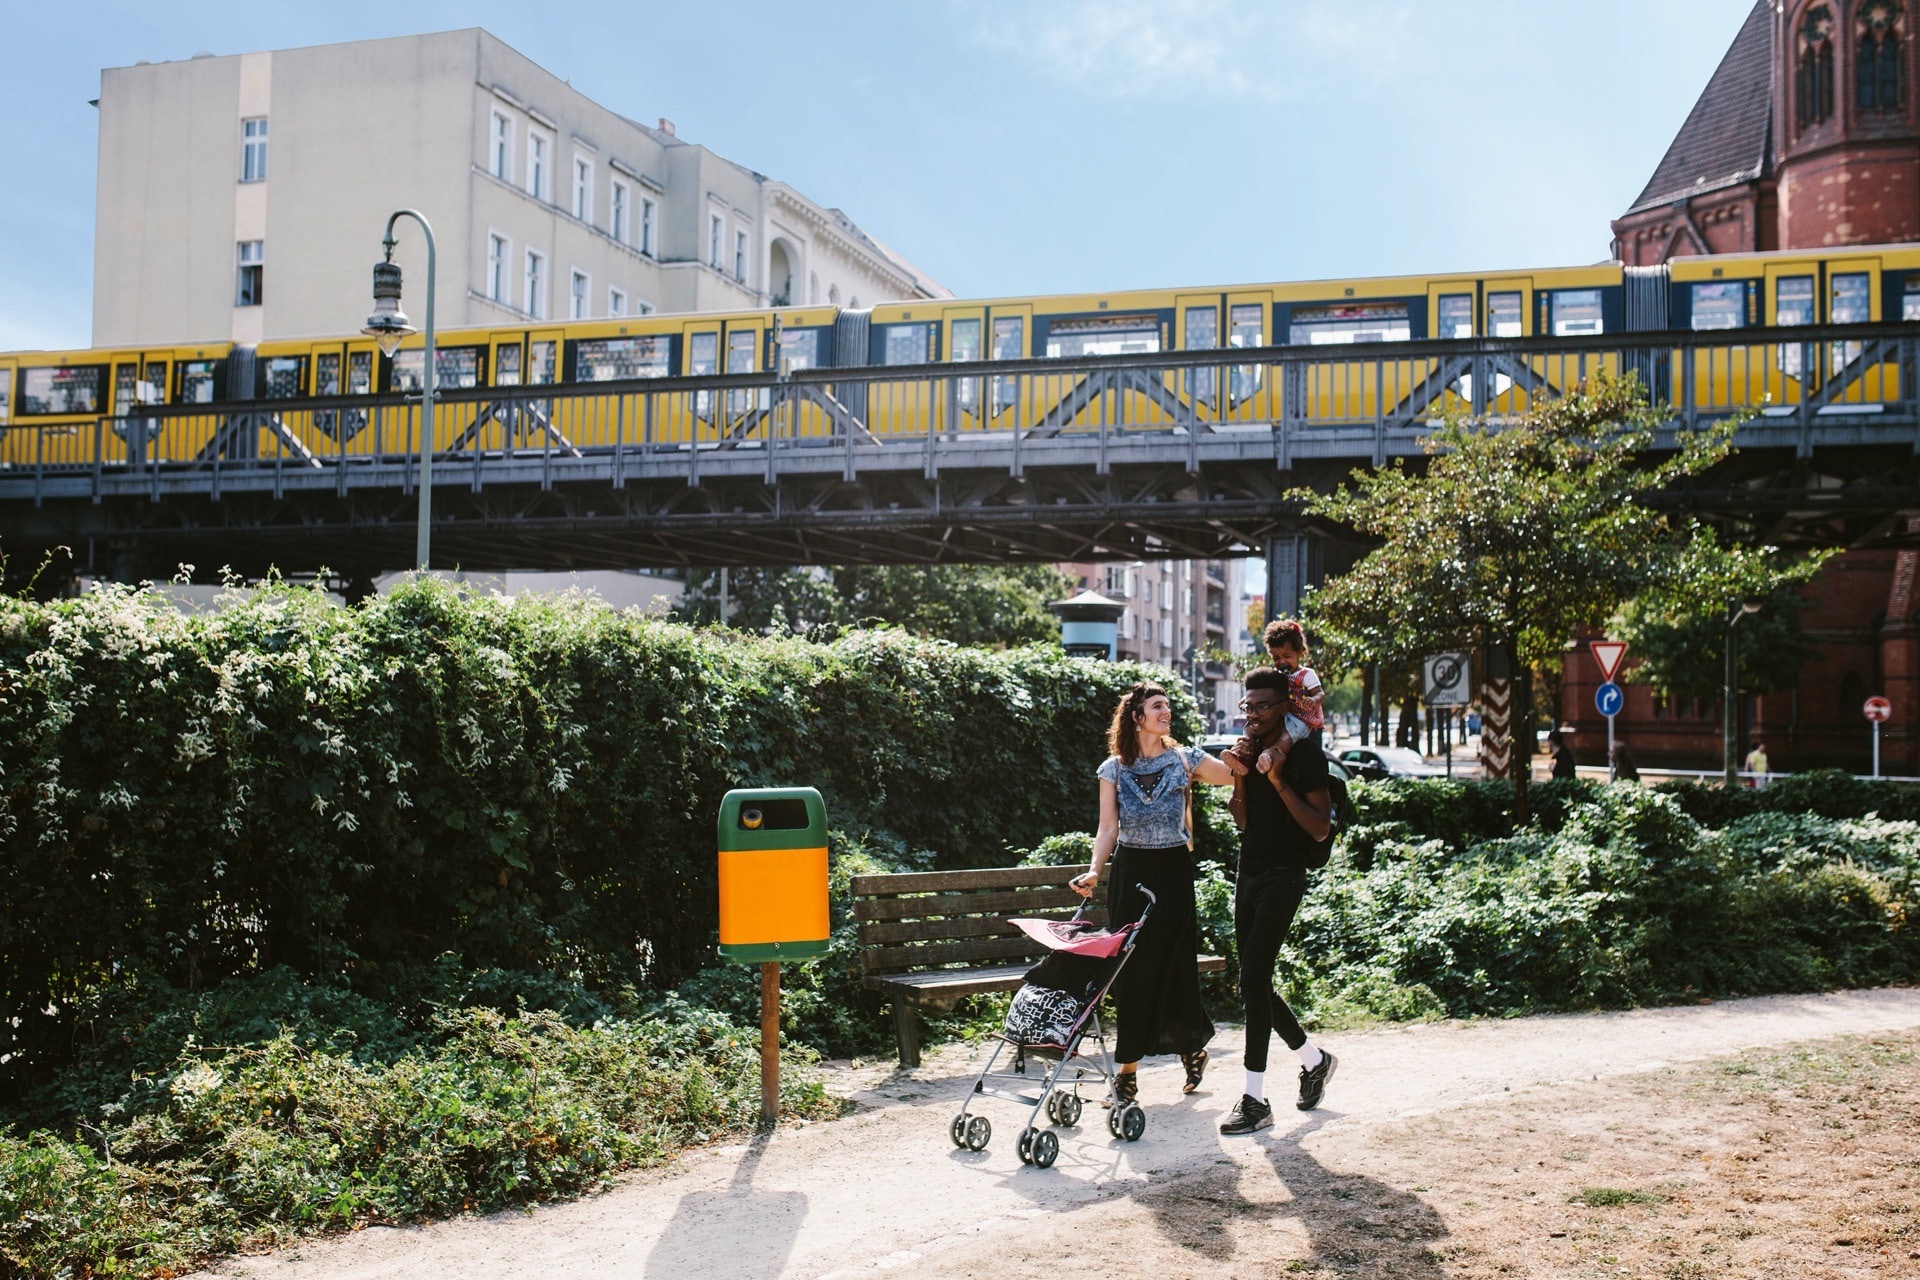 Eine junge Familie spaziert mit Kinderwagen durch einen Parkabschnitt während im Hintergrund eine S-Bahn vorbeifährt